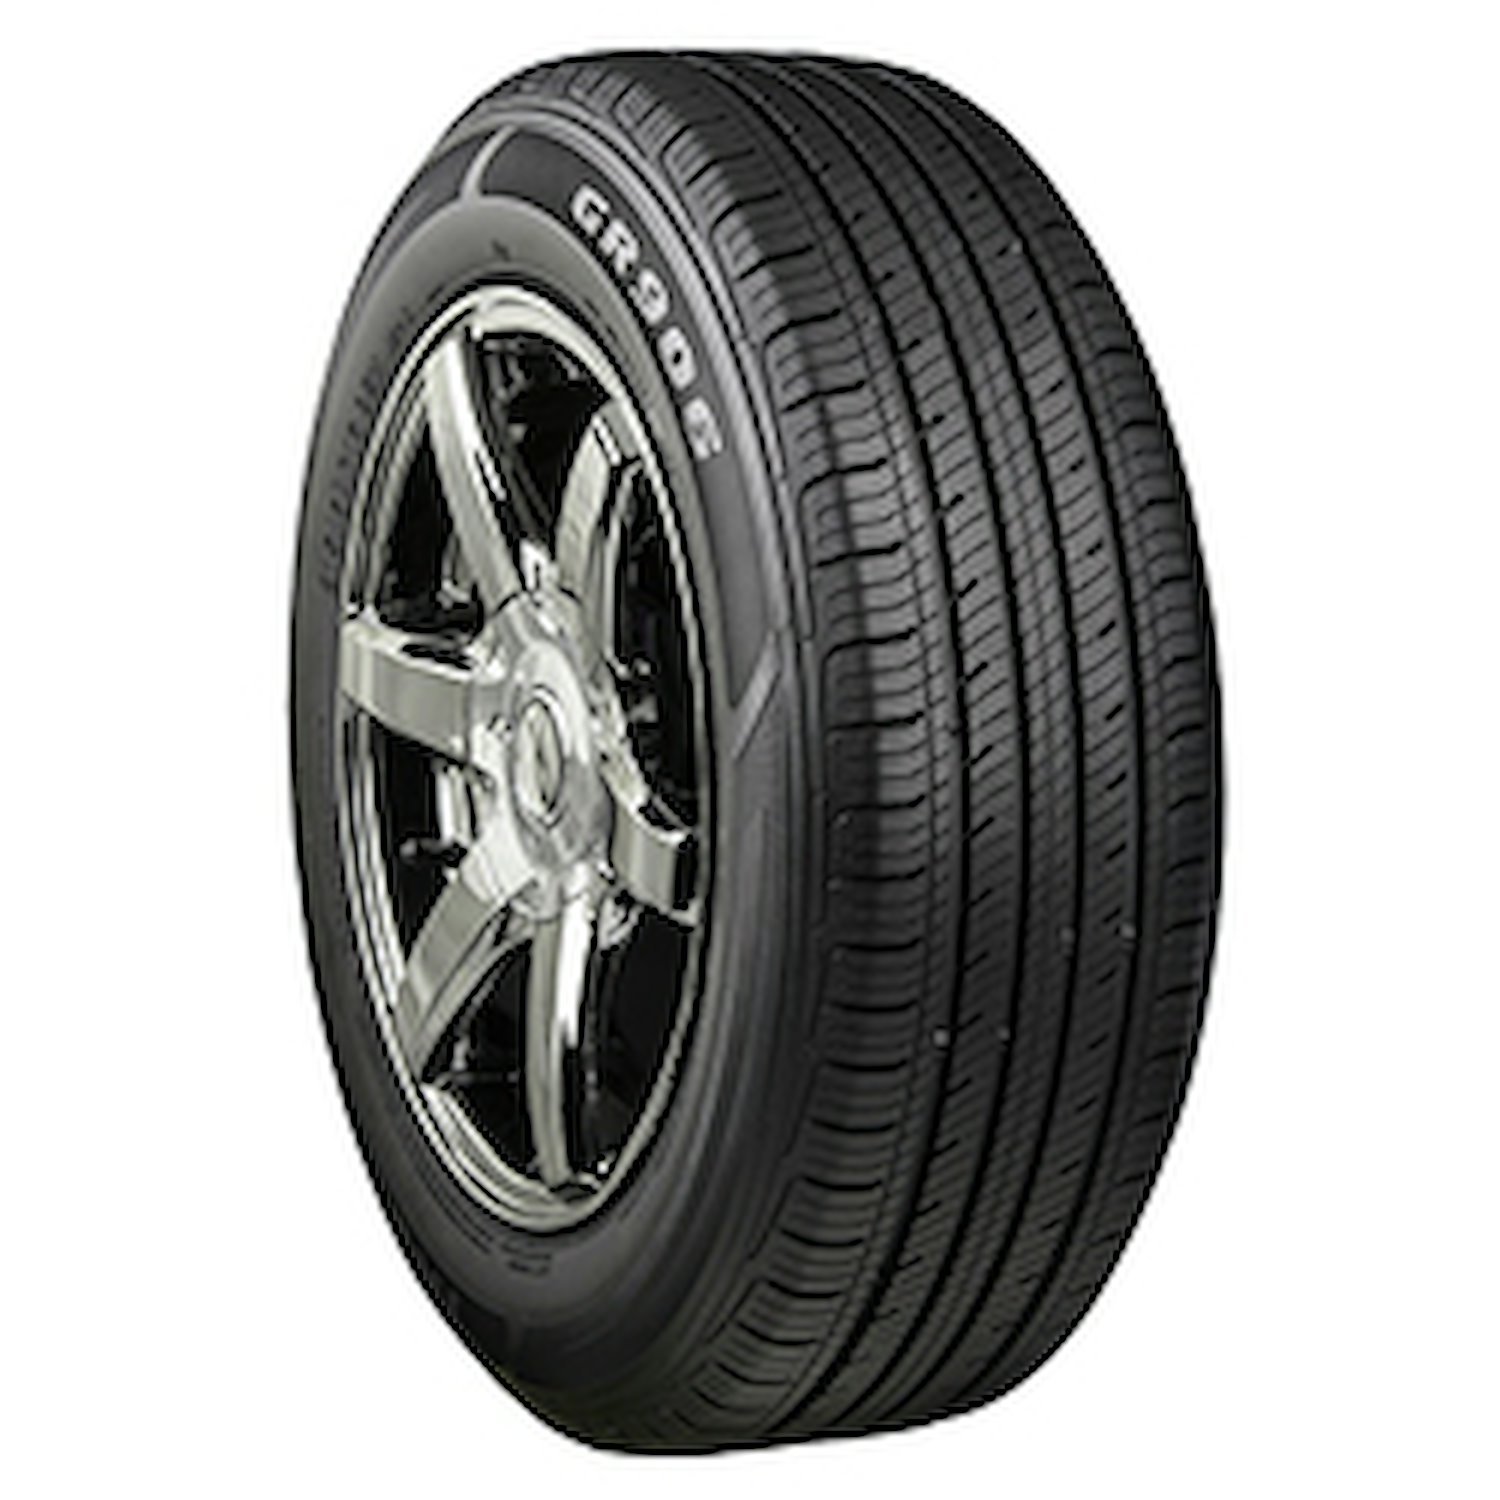 GR906 Tire, 225/55R18 98H